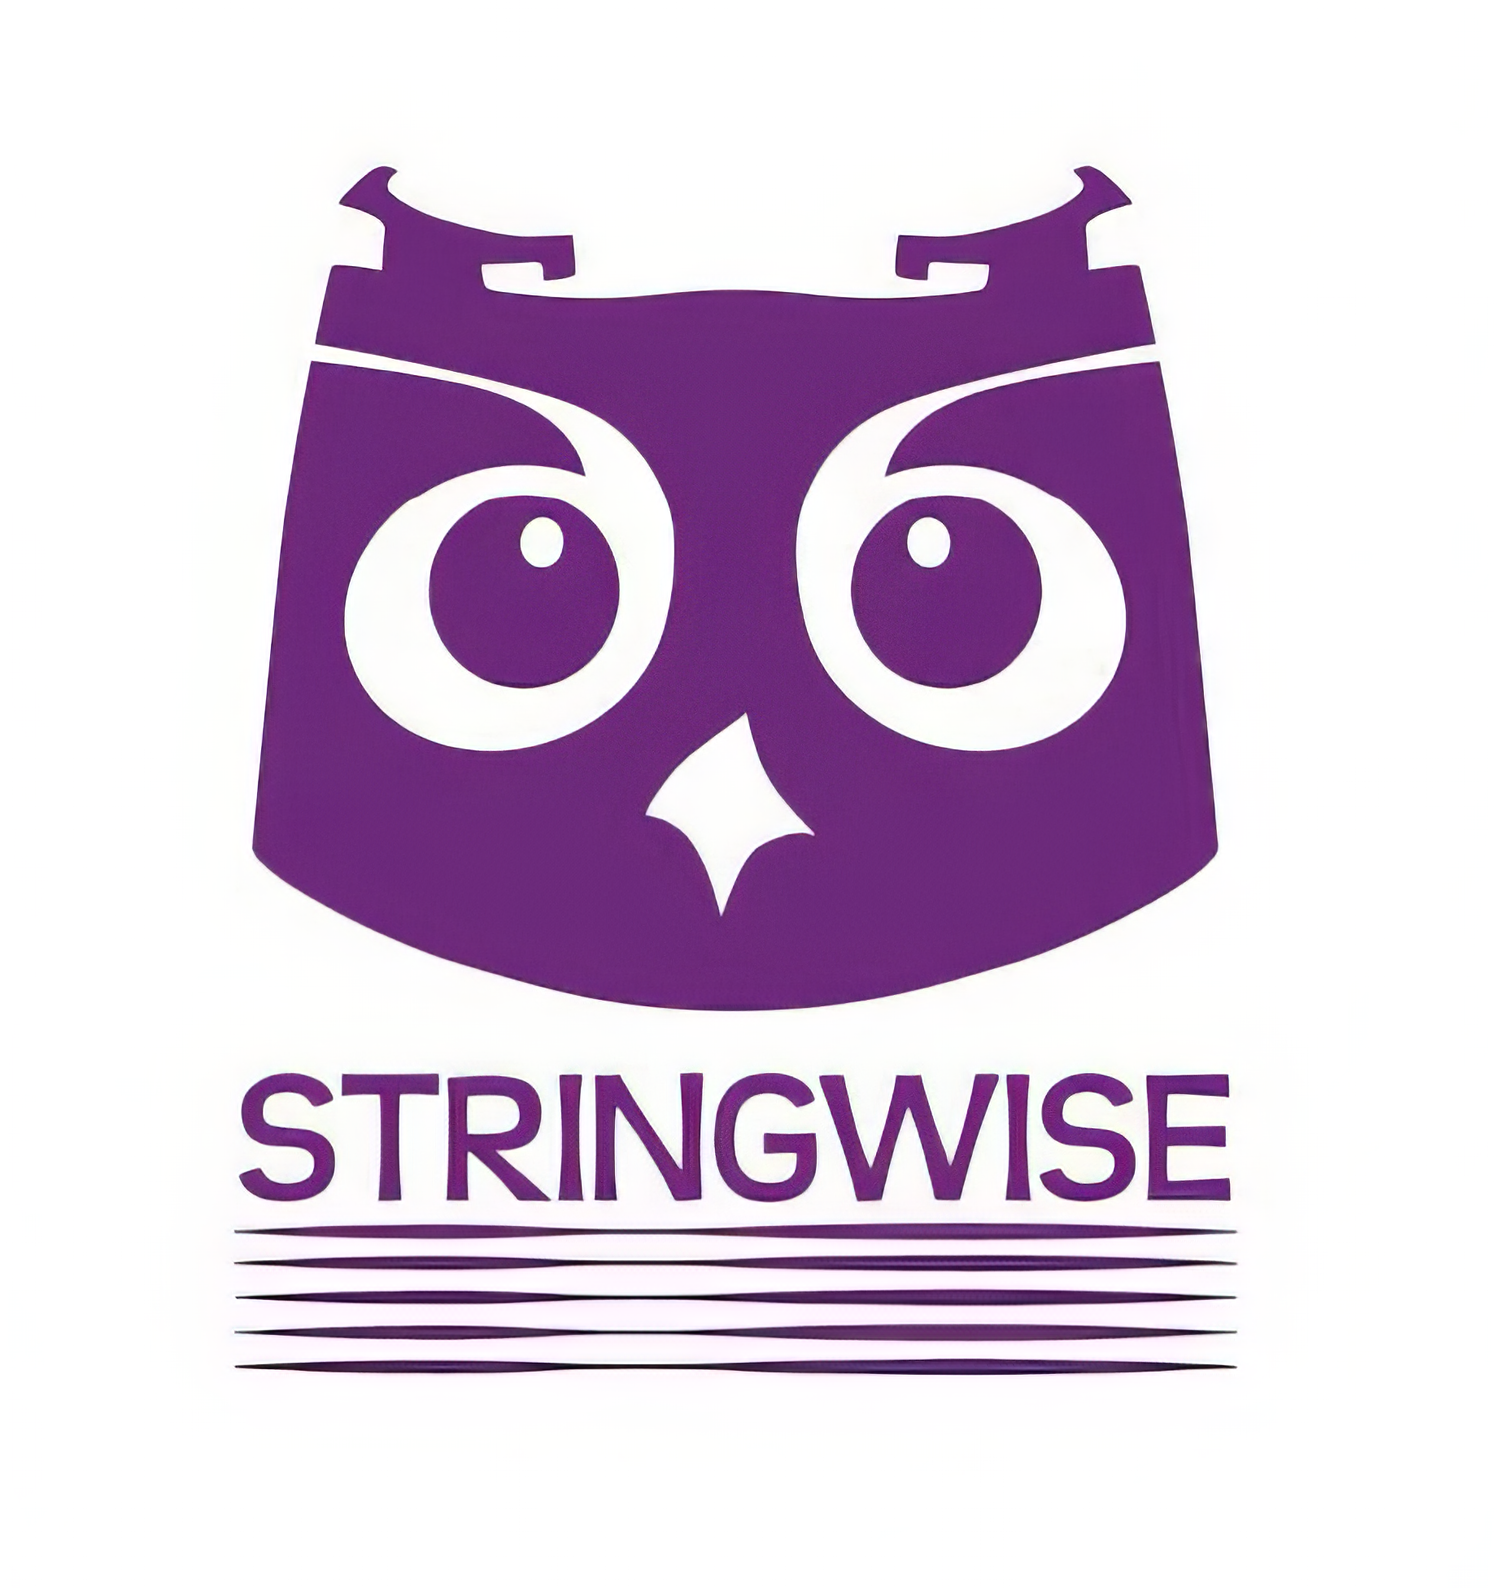 Stringwise